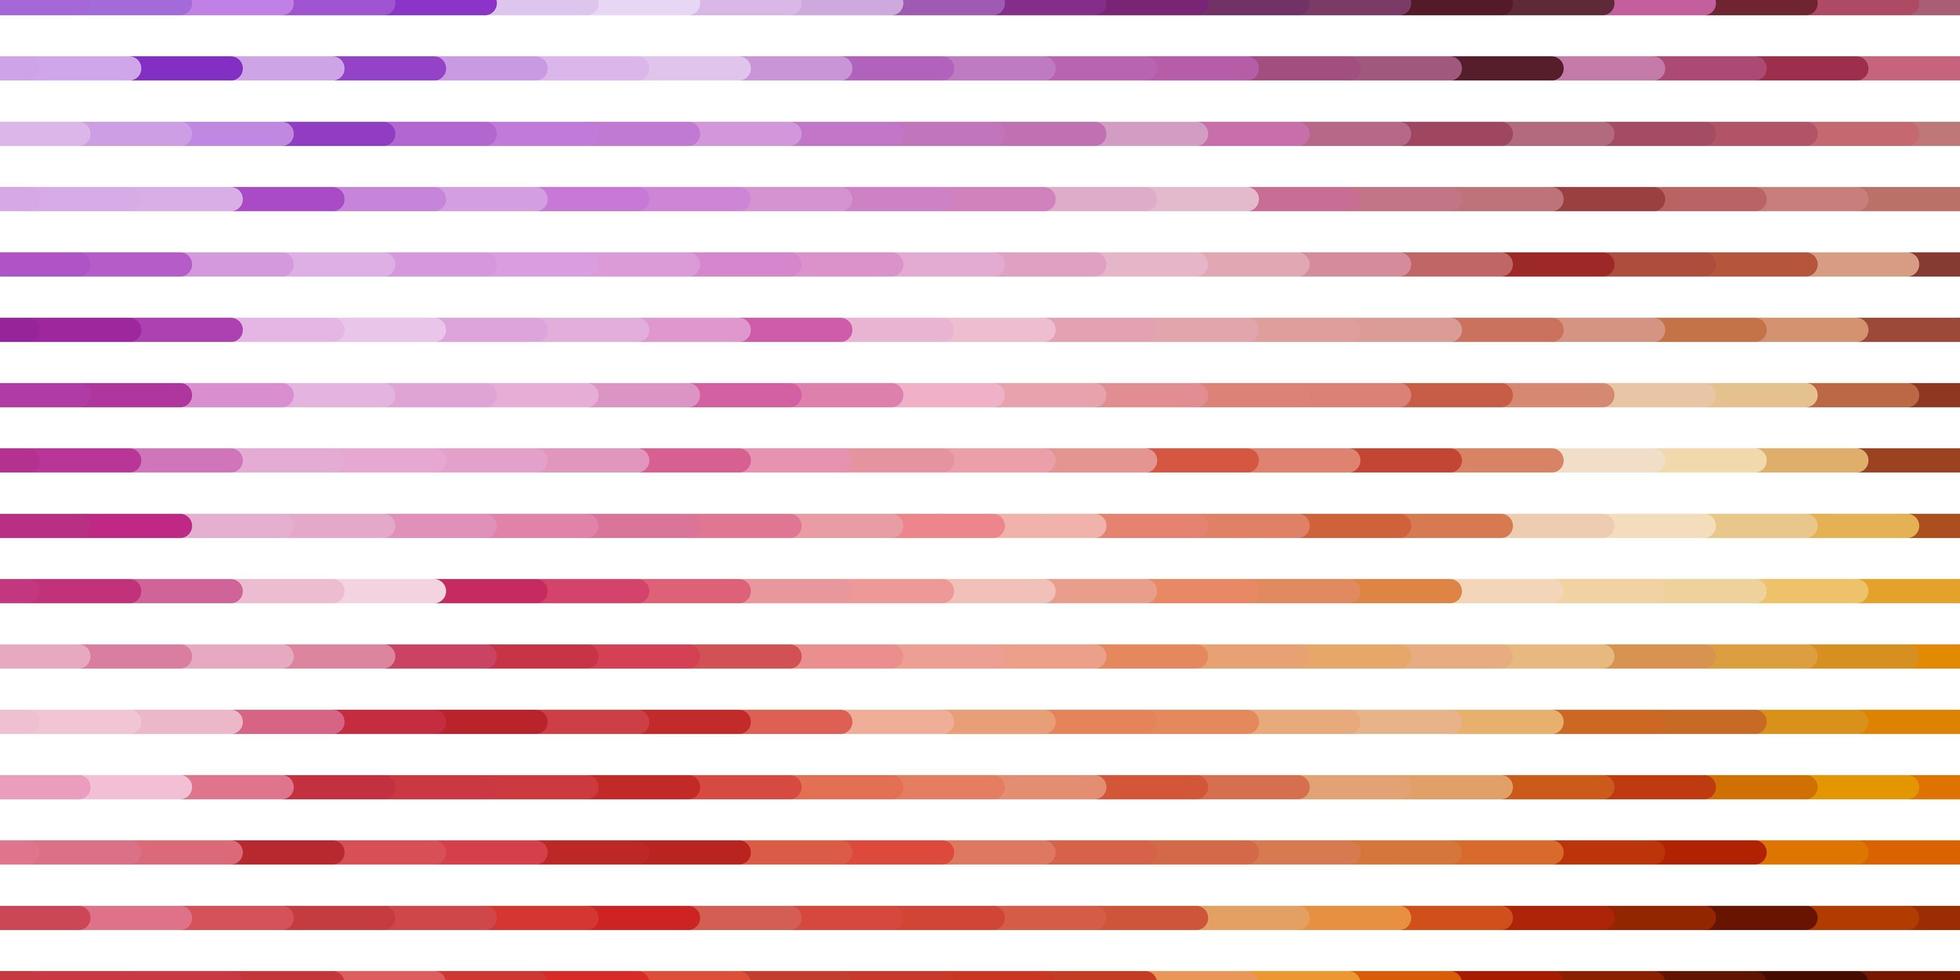 lichtpaars, roze vectorpatroon met lijnen. vector